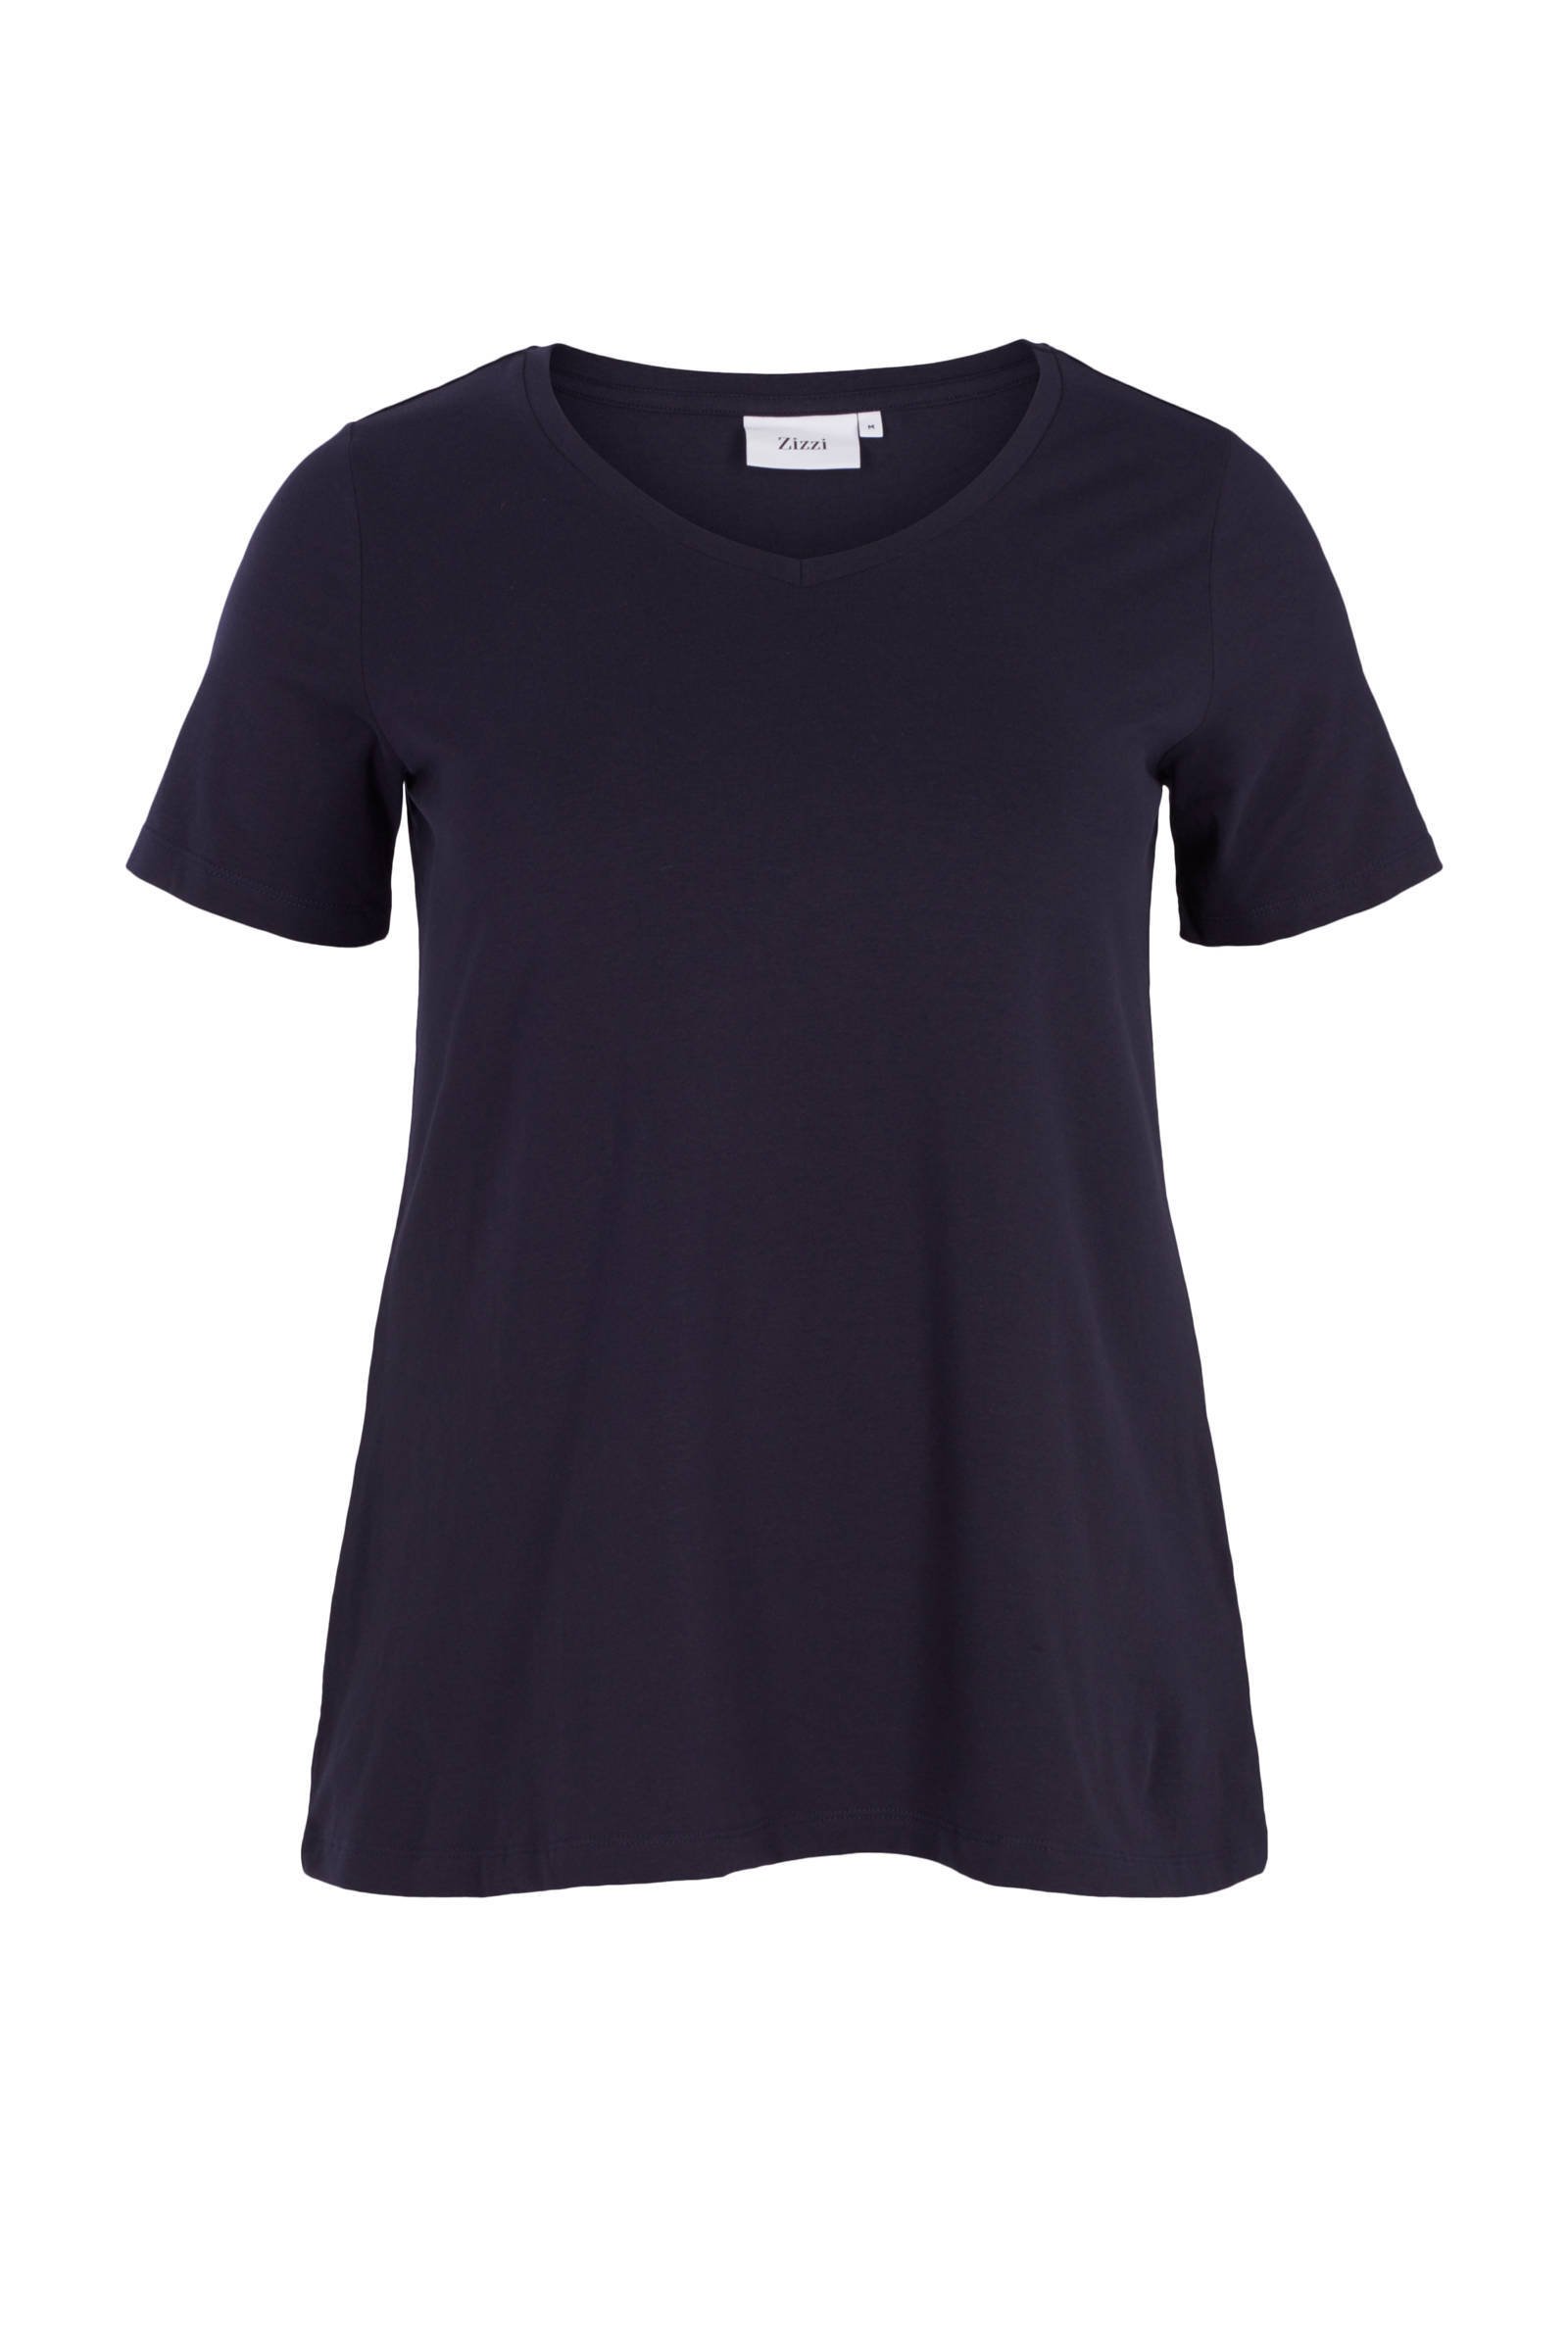 Zizzi T shirt met V hals en korte mouwen donkerblauw online kopen